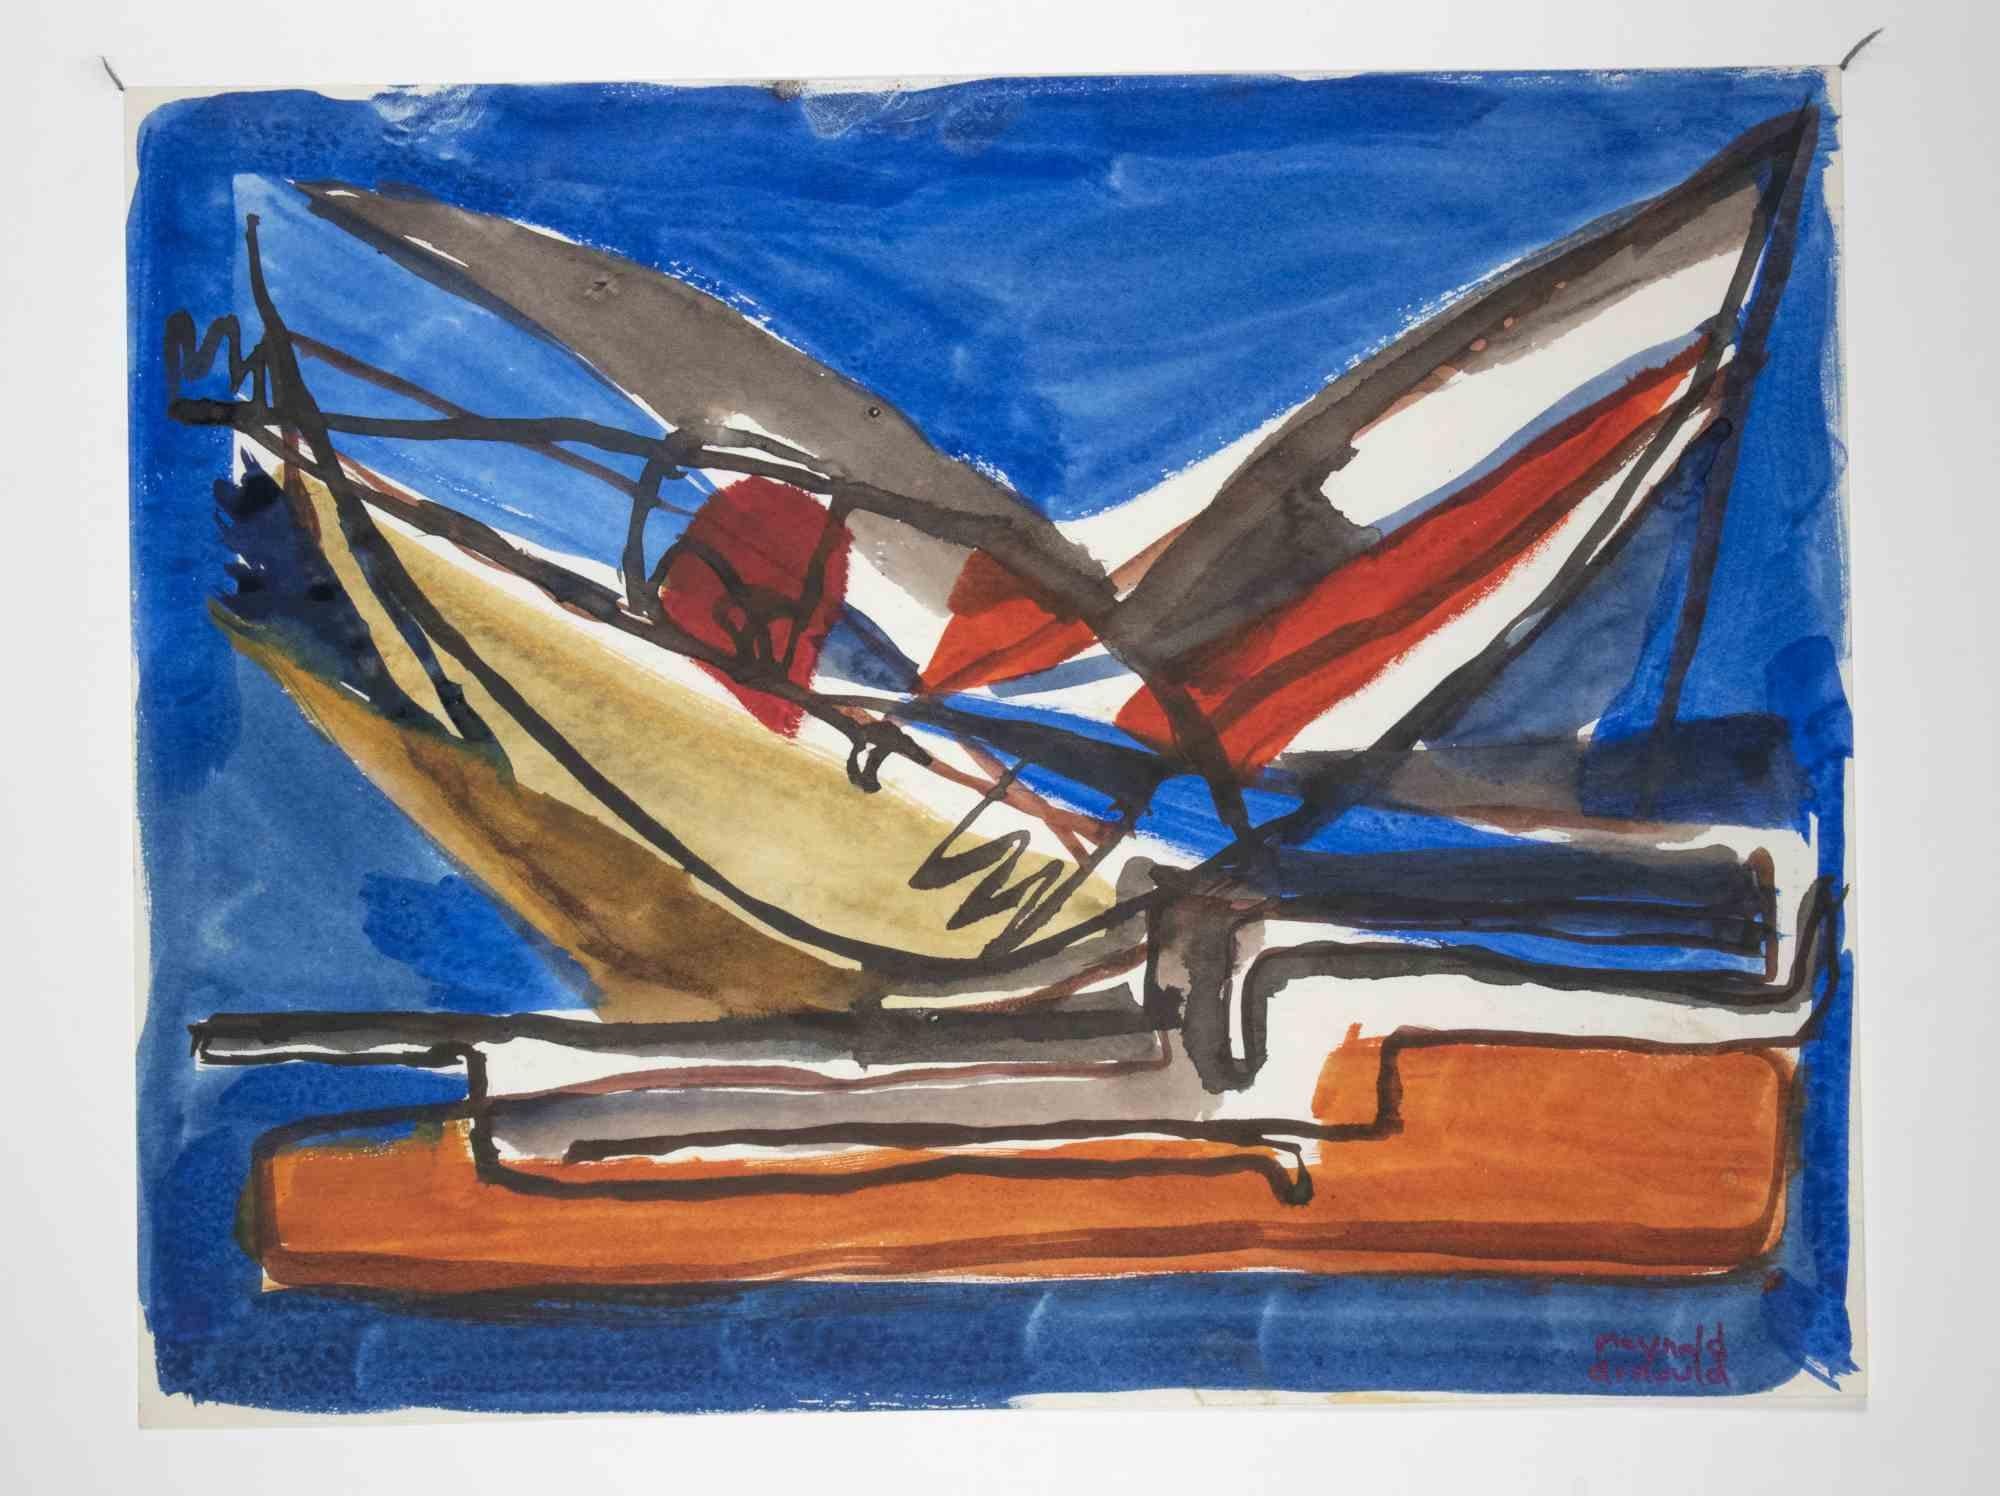 Abstrakte Komposition ist ein Aquarell Kunstwerk von Reynold Arnould realisiert  (Le Havre 1919 - Parigi 1980) im Jahr 1955.

In gutem Zustand mit einem weißen Passepartout aus Karton (35x49 cm).

Handsigniert vom Künstler in der rechten unteren